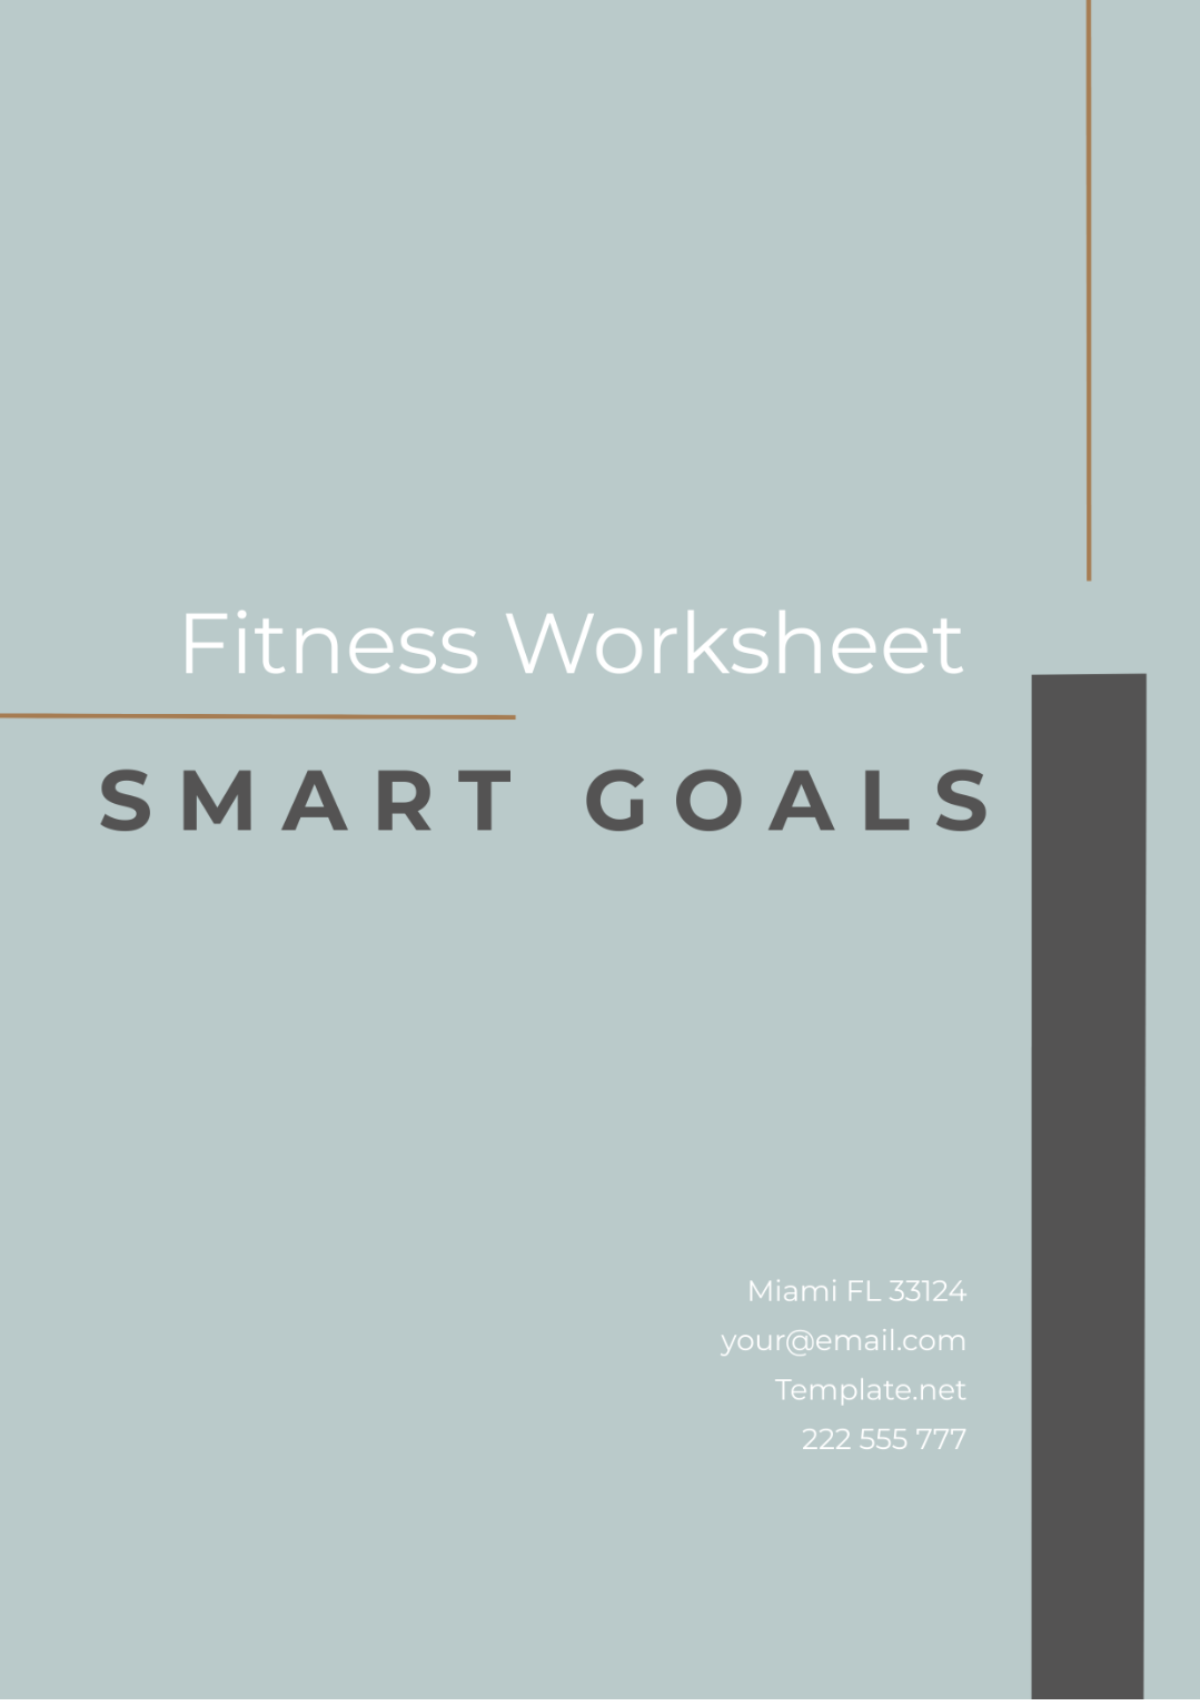 SMART Goals Fitness Worksheet Template